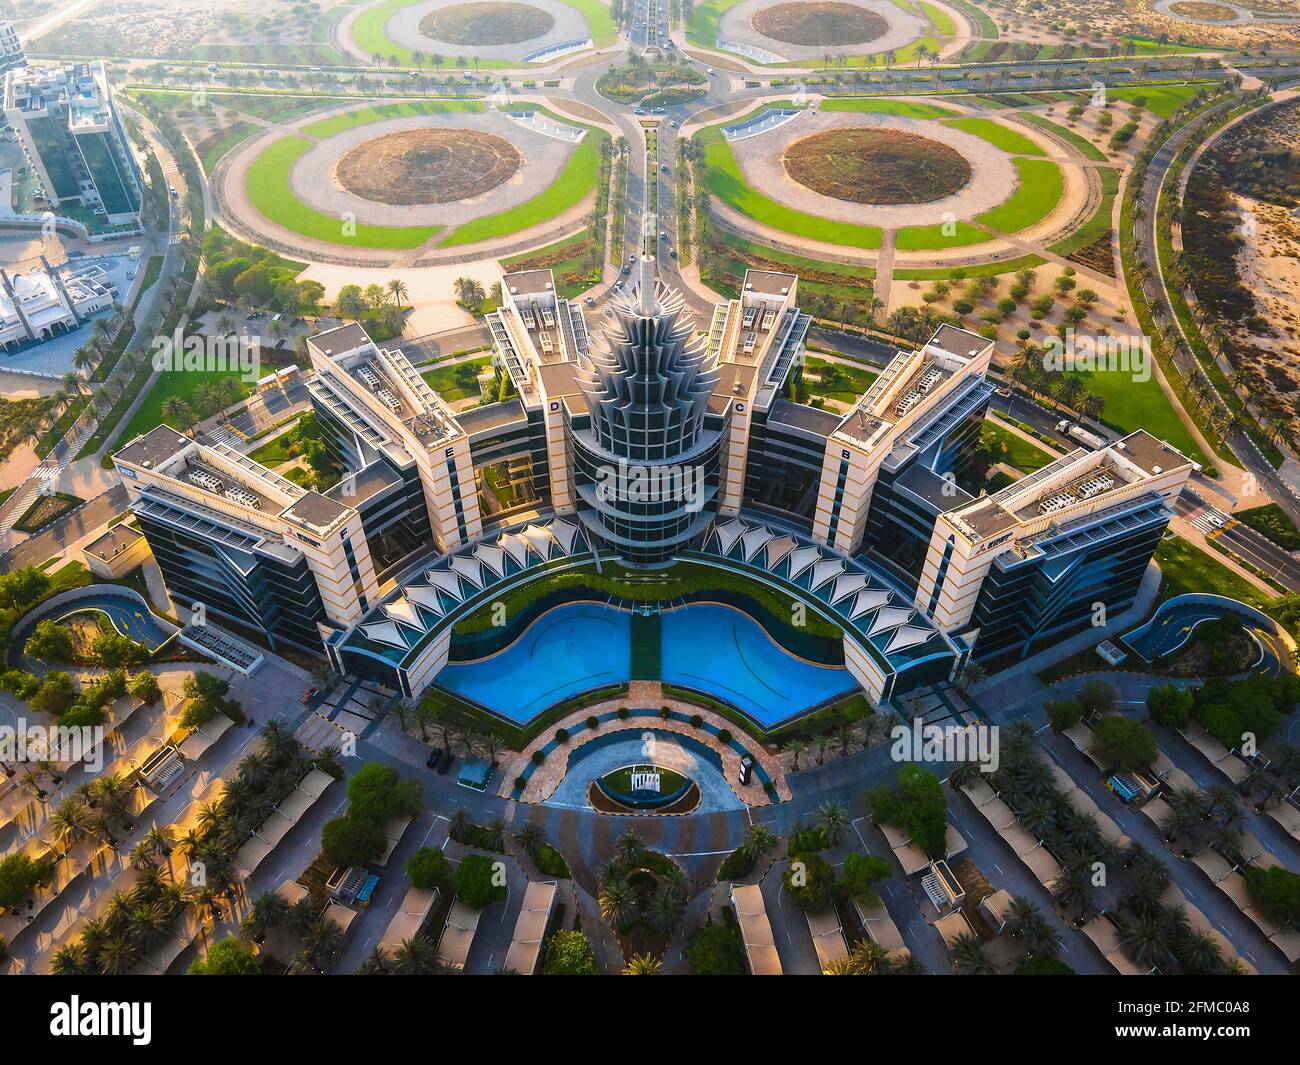 Dubai, Emiratos Árabes Unidos - 5 de mayo de 2021: Dubai Silicon Oasis parque tecnológico, zona residencial y zona libre en Dubai emirate suburbios en el árabe unido Foto de stock